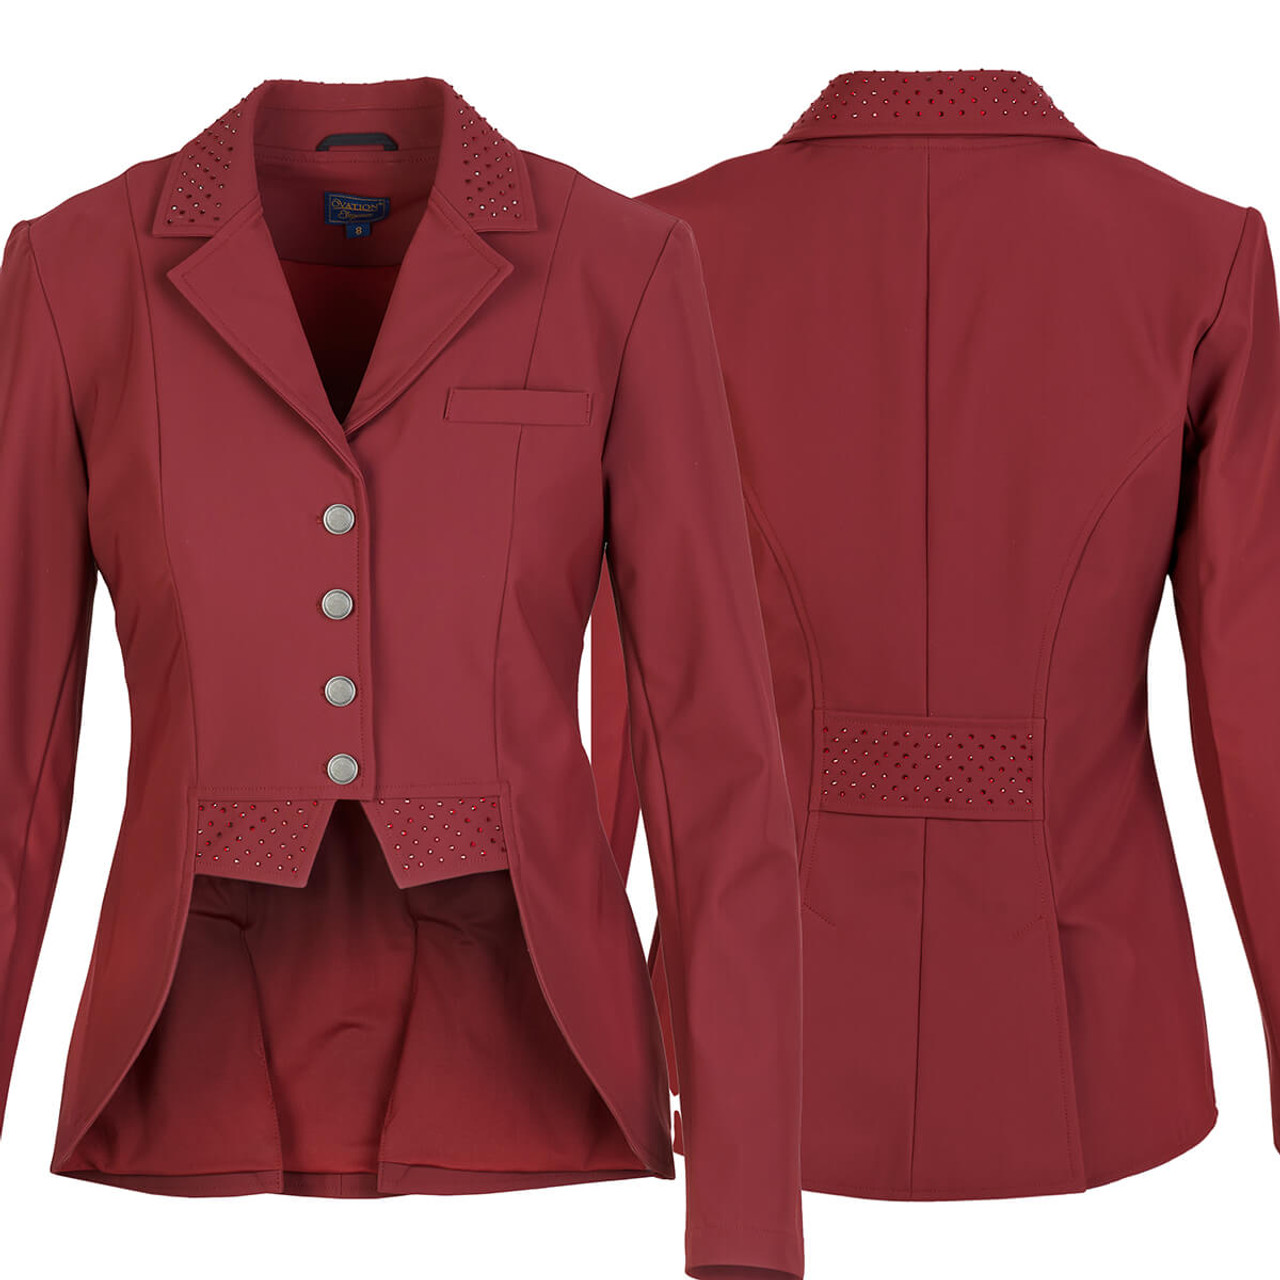 Ovation Elegance Dressage Show Coat - burgundy